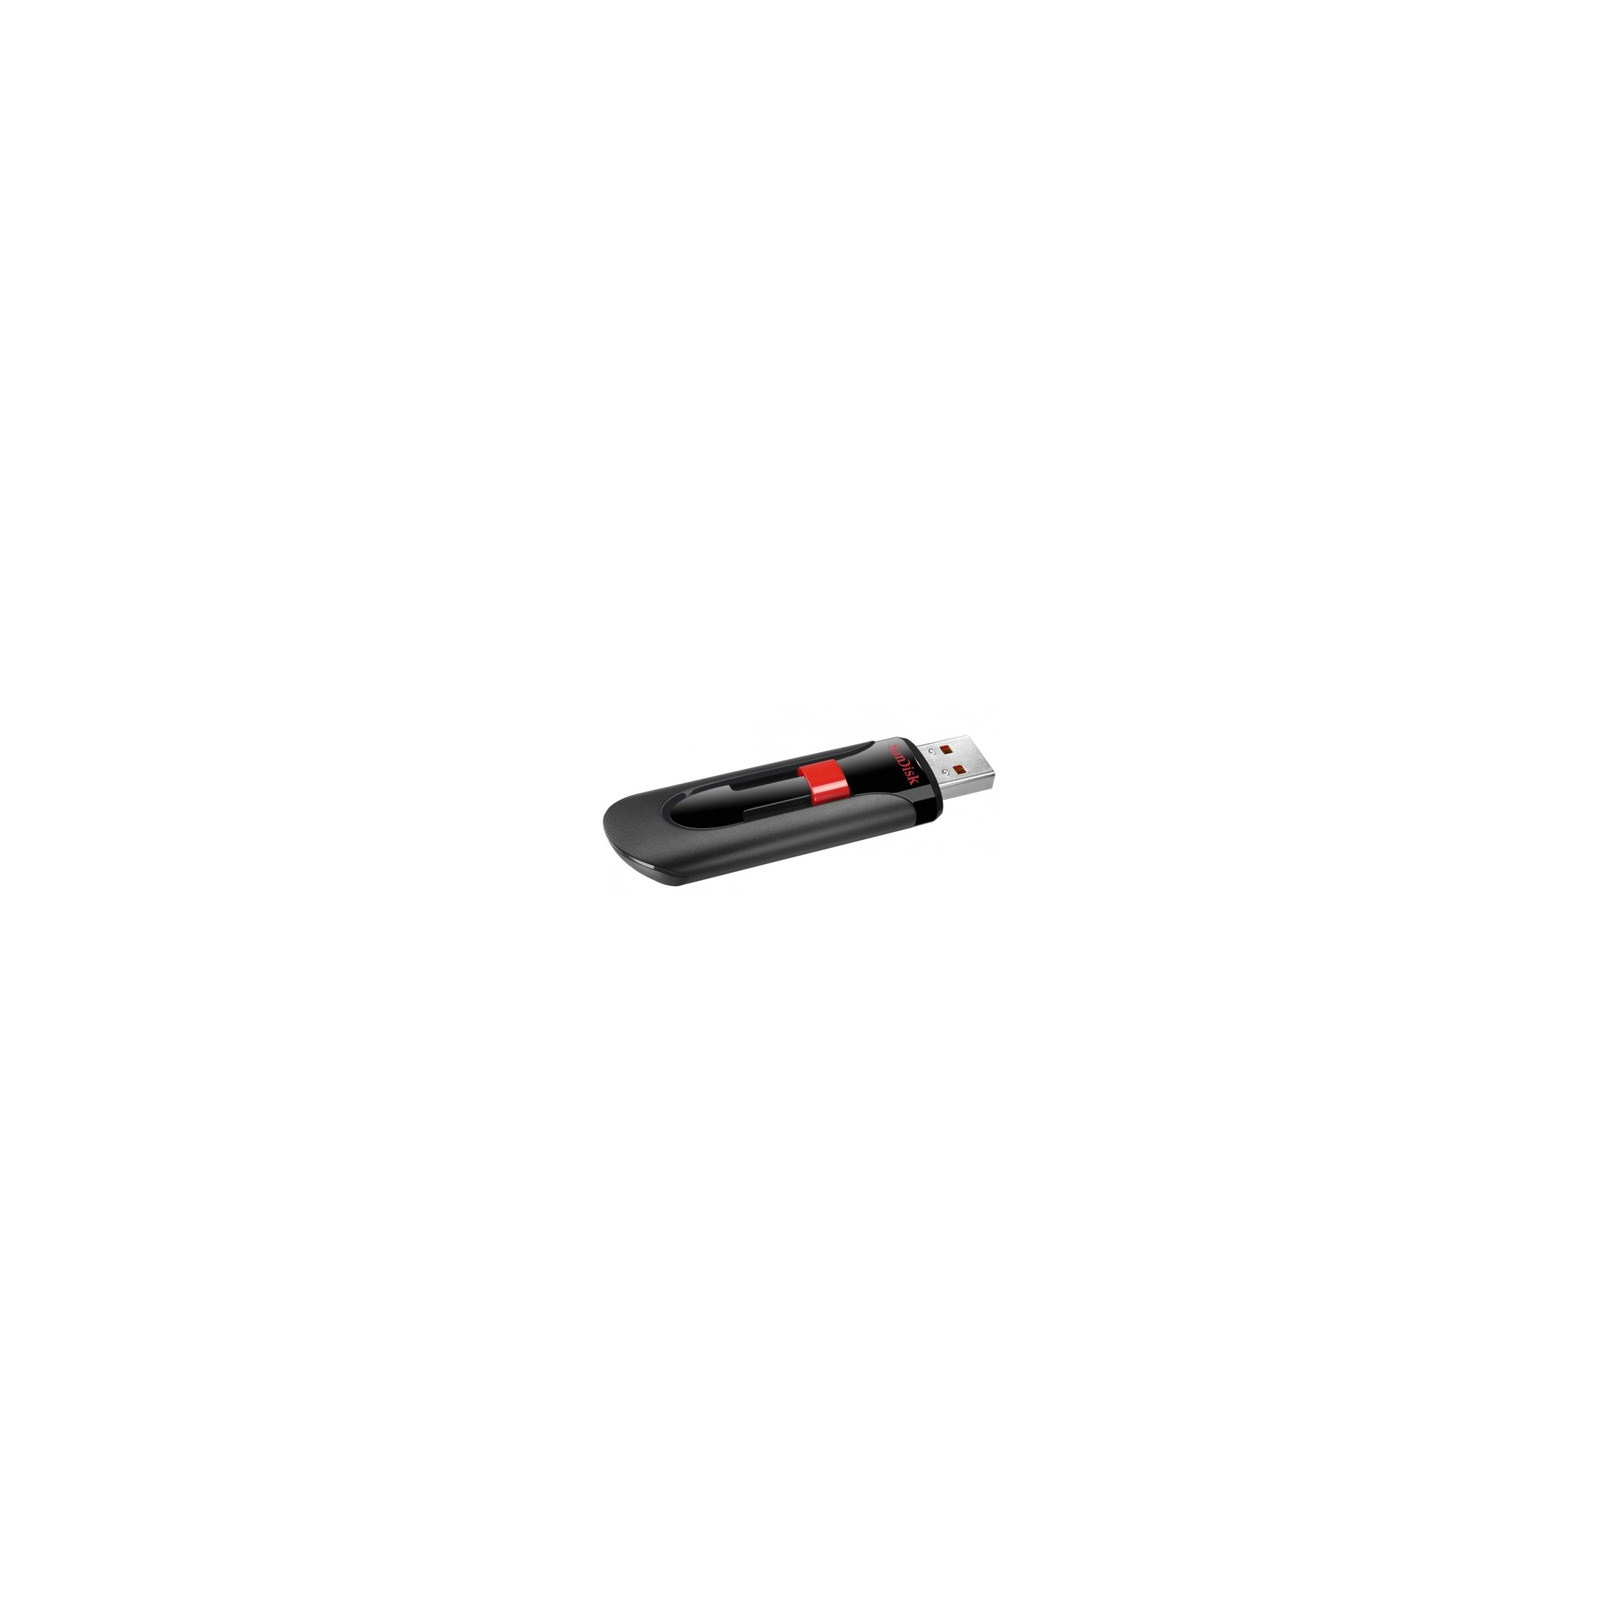 USB флеш накопичувач SanDisk 128Gb Cruzer Glide (SDCZ60-128G-B35) зображення 2